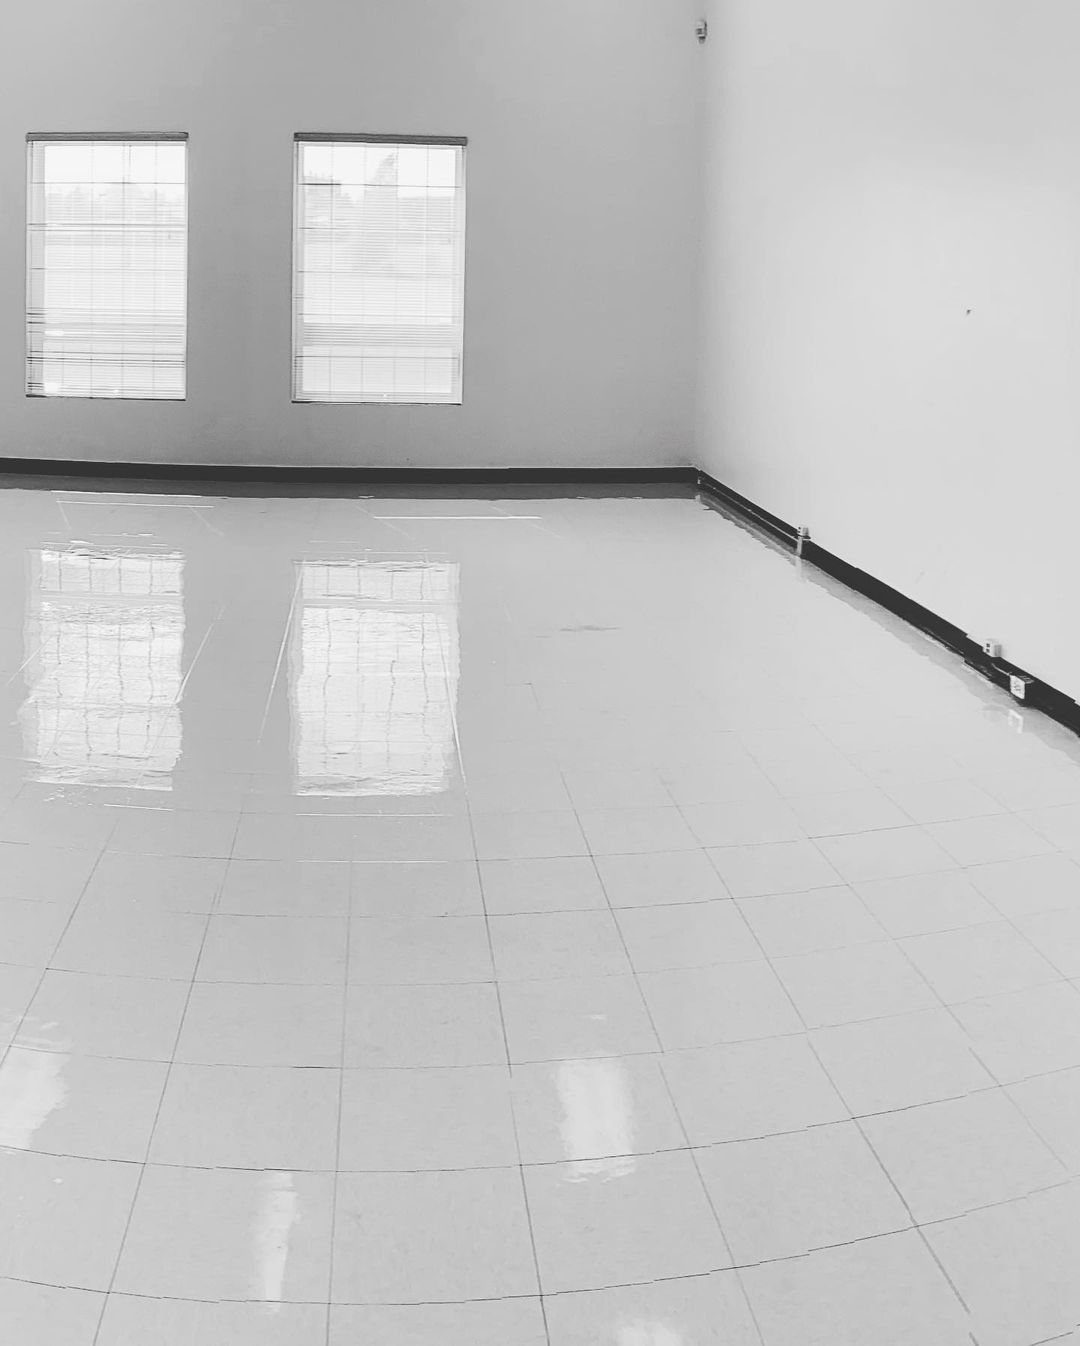 Une photo en noir et blanc d'une pièce vide avec des sols et des fenêtres carrelés.